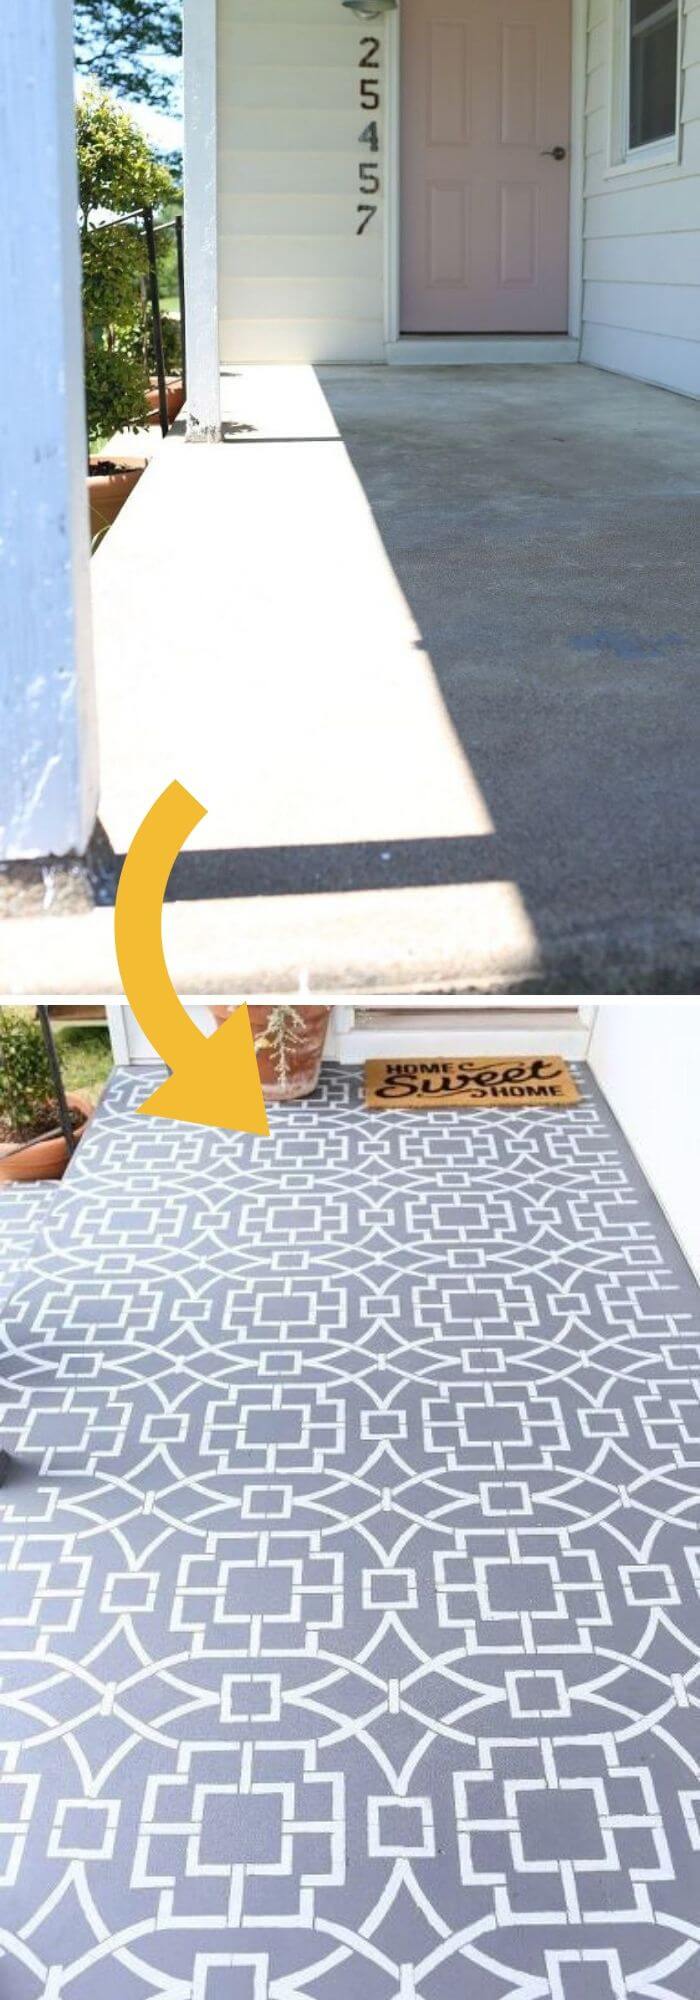 1 outdoor tile ideas